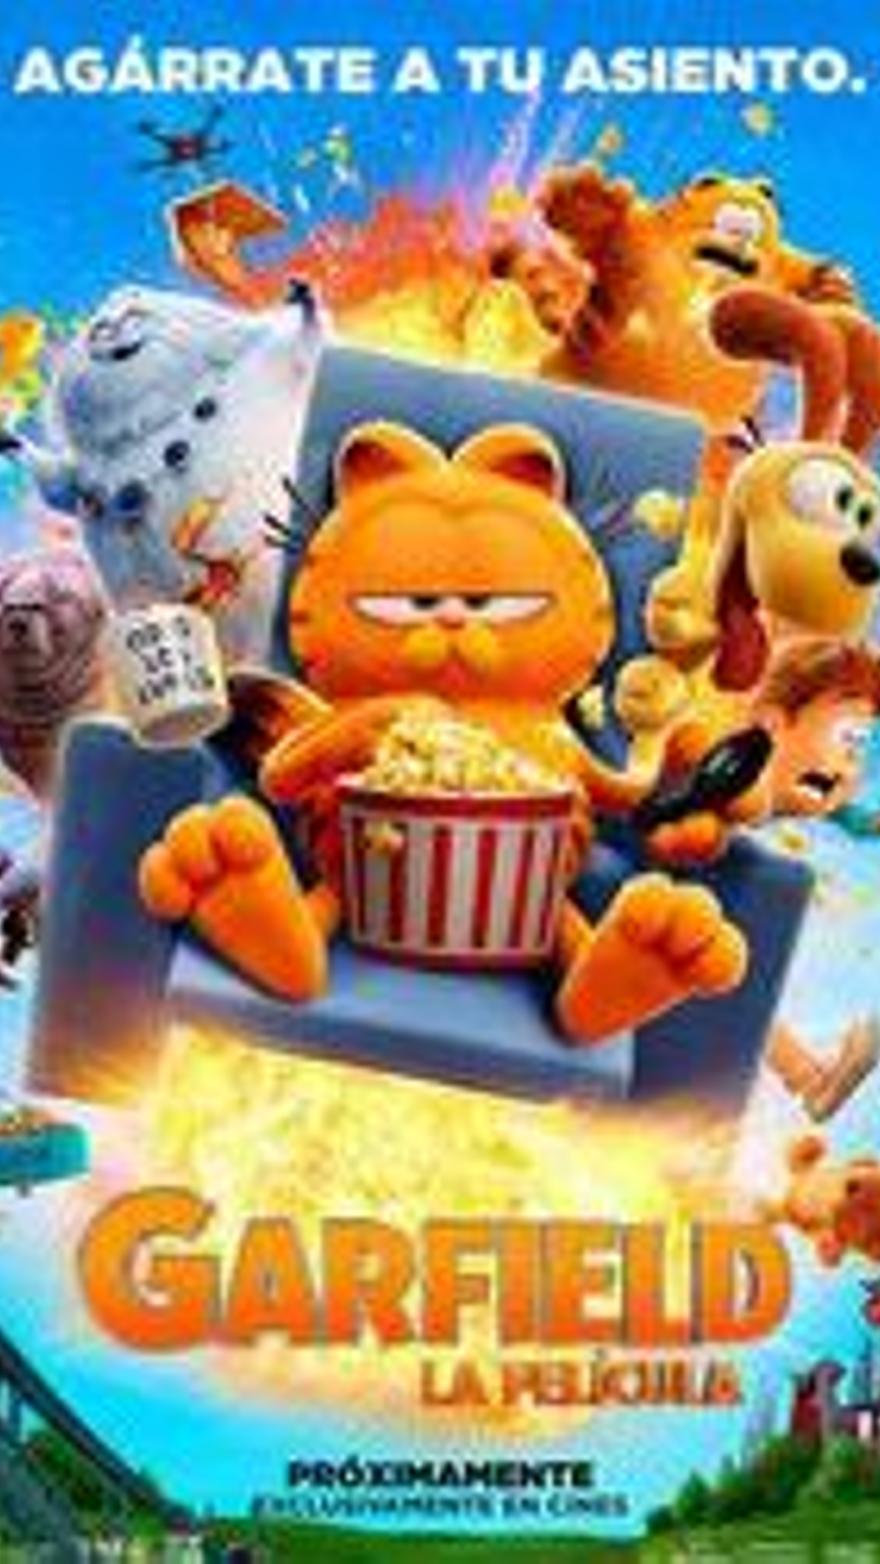 Garfield: La película V.O.S.E.